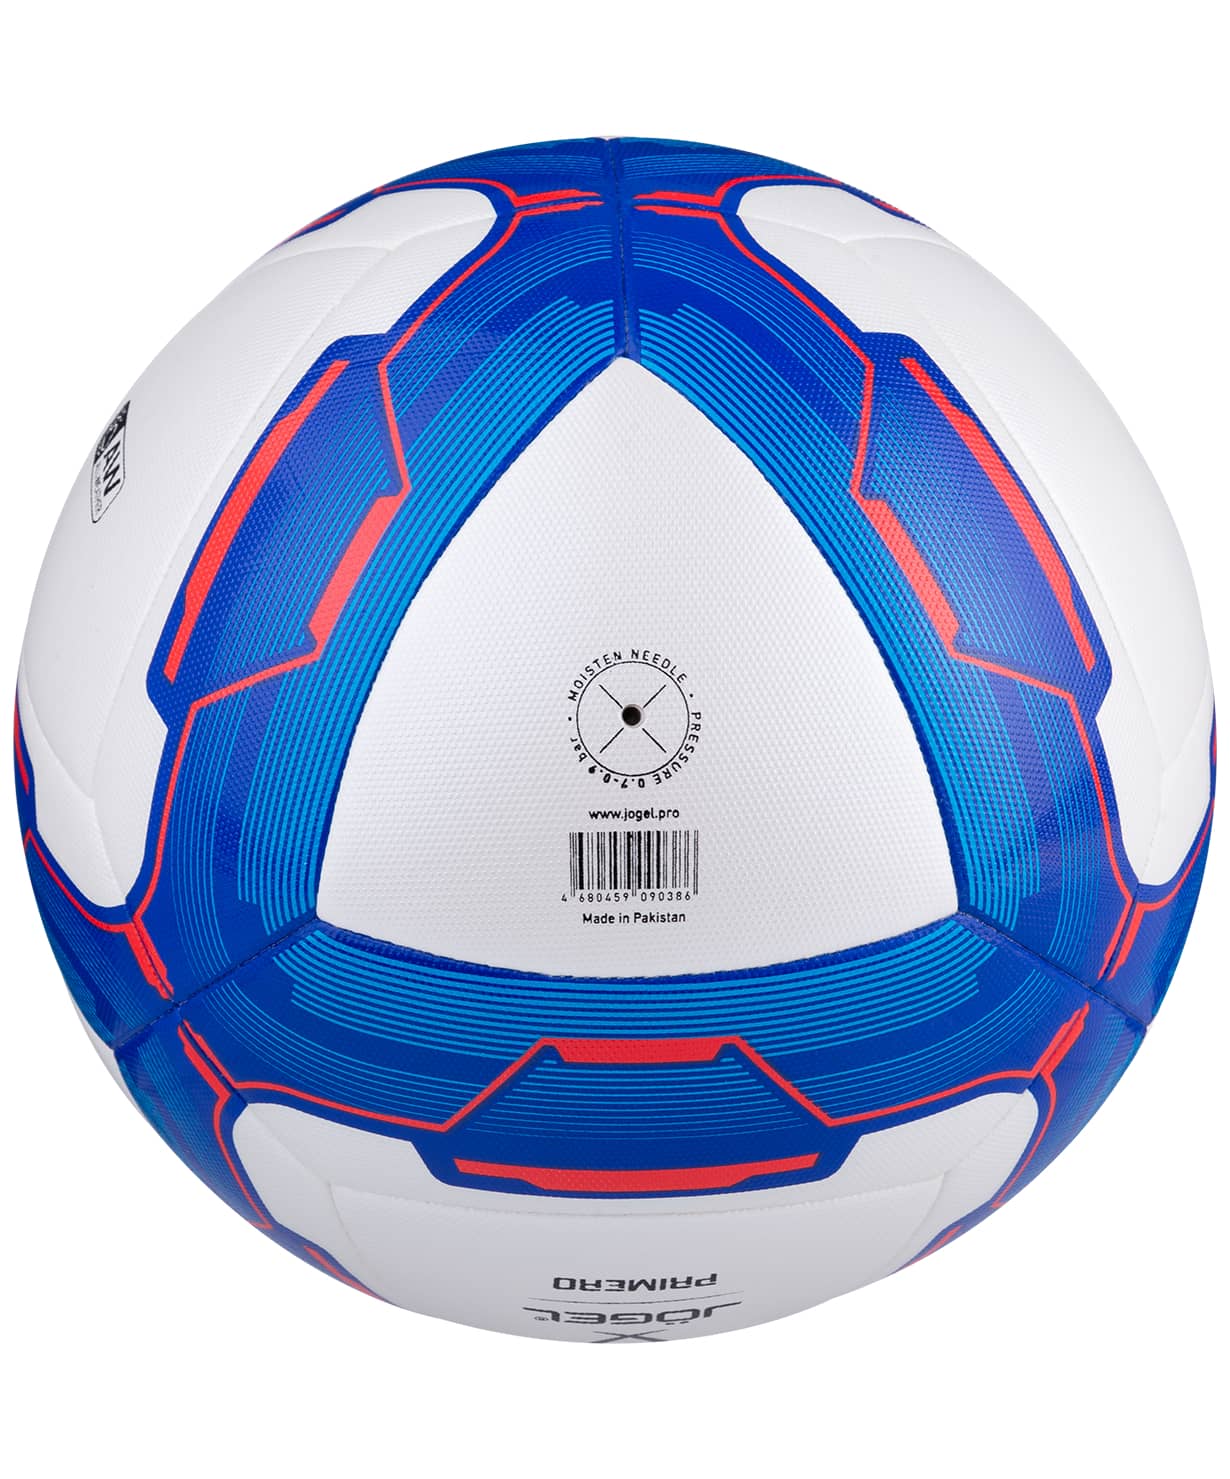 фото Jögel PRIMERO мяч футбольный  размер 4 Football-54 